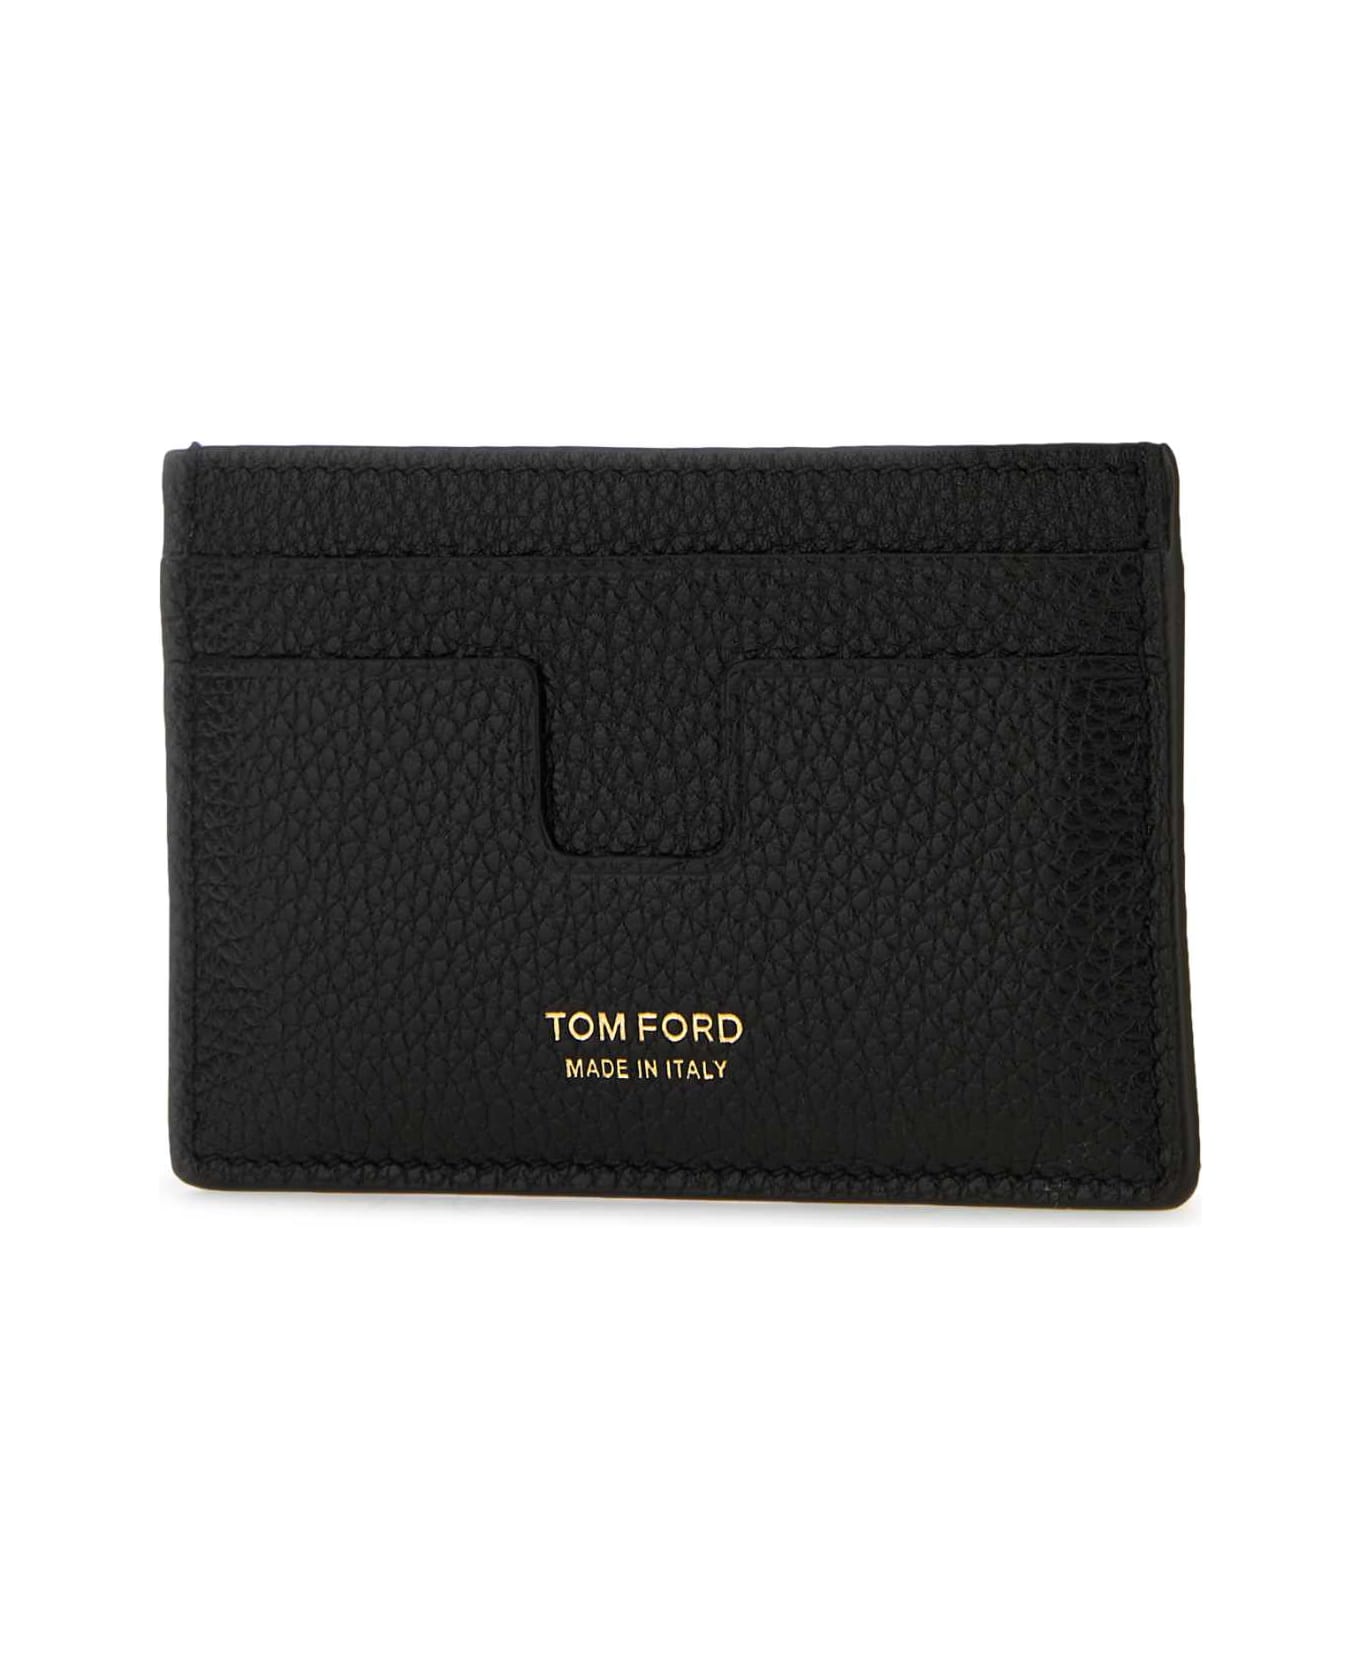 Tom Ford Black Leather Card Holder - BLACK